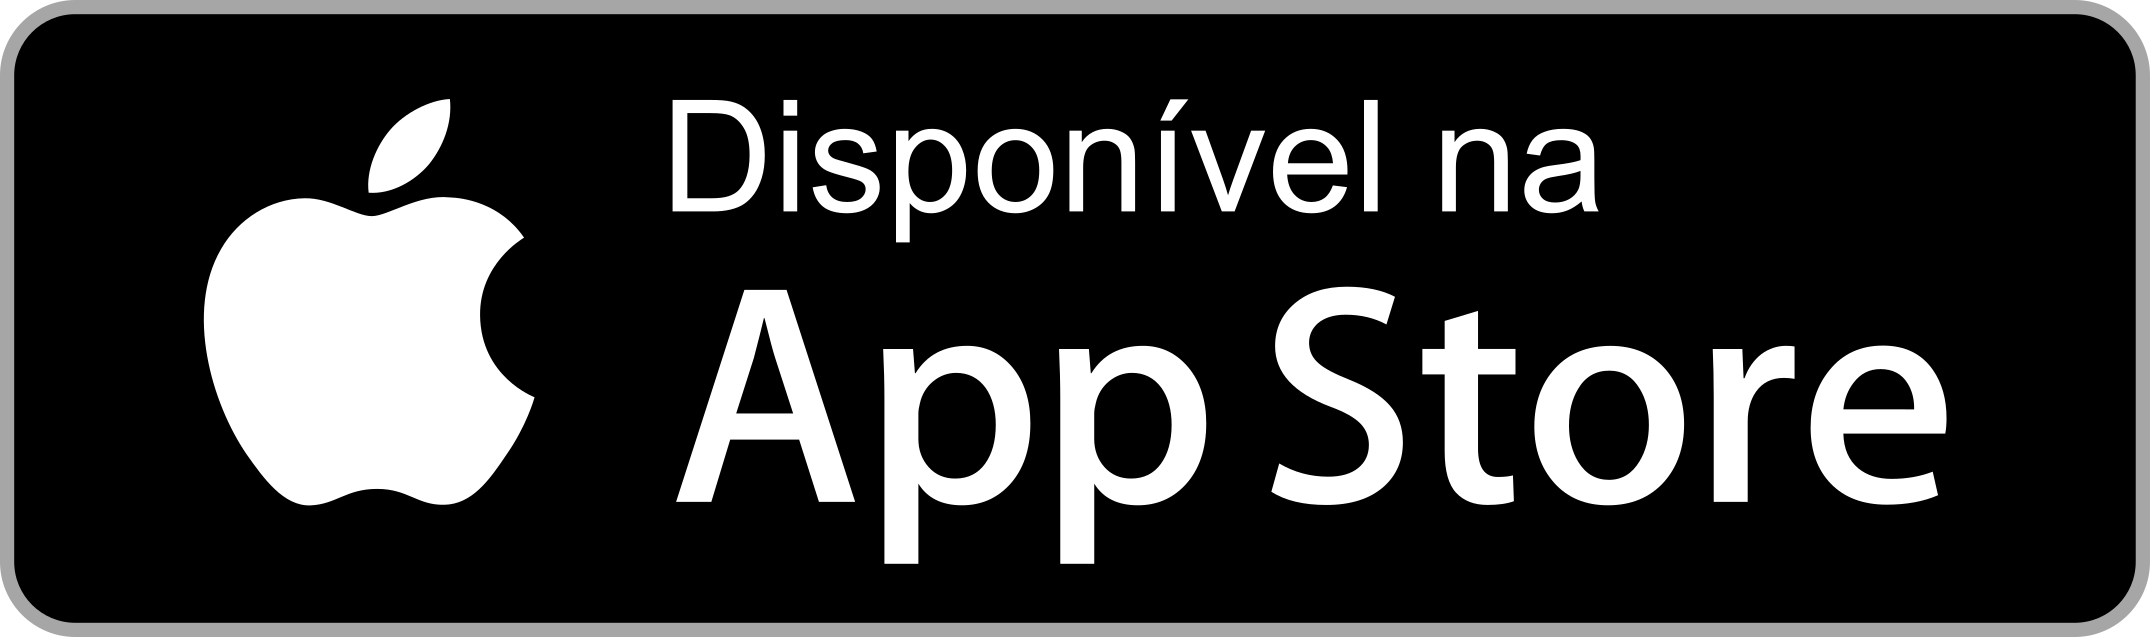 disponivel na app store botao 5 - Disponível na App Store - Botão Disponível na App Store